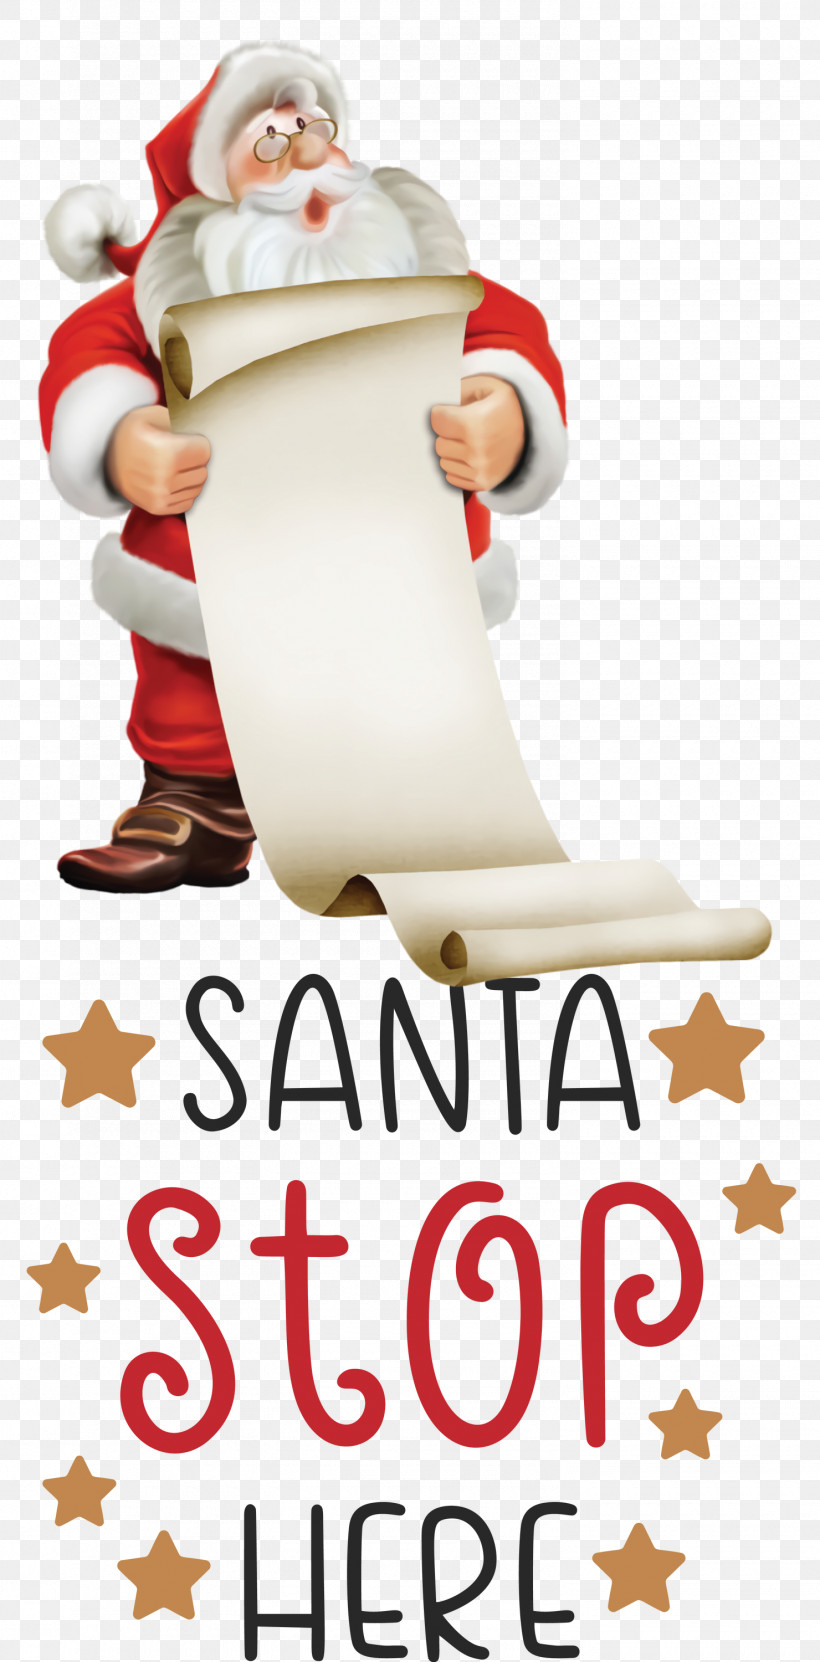 Santa Stop Here Santa Christmas, PNG, 1480x3000px, Santa Stop Here, Christmas, Christmas Day, Christmas Ornament, Cricut Download Free